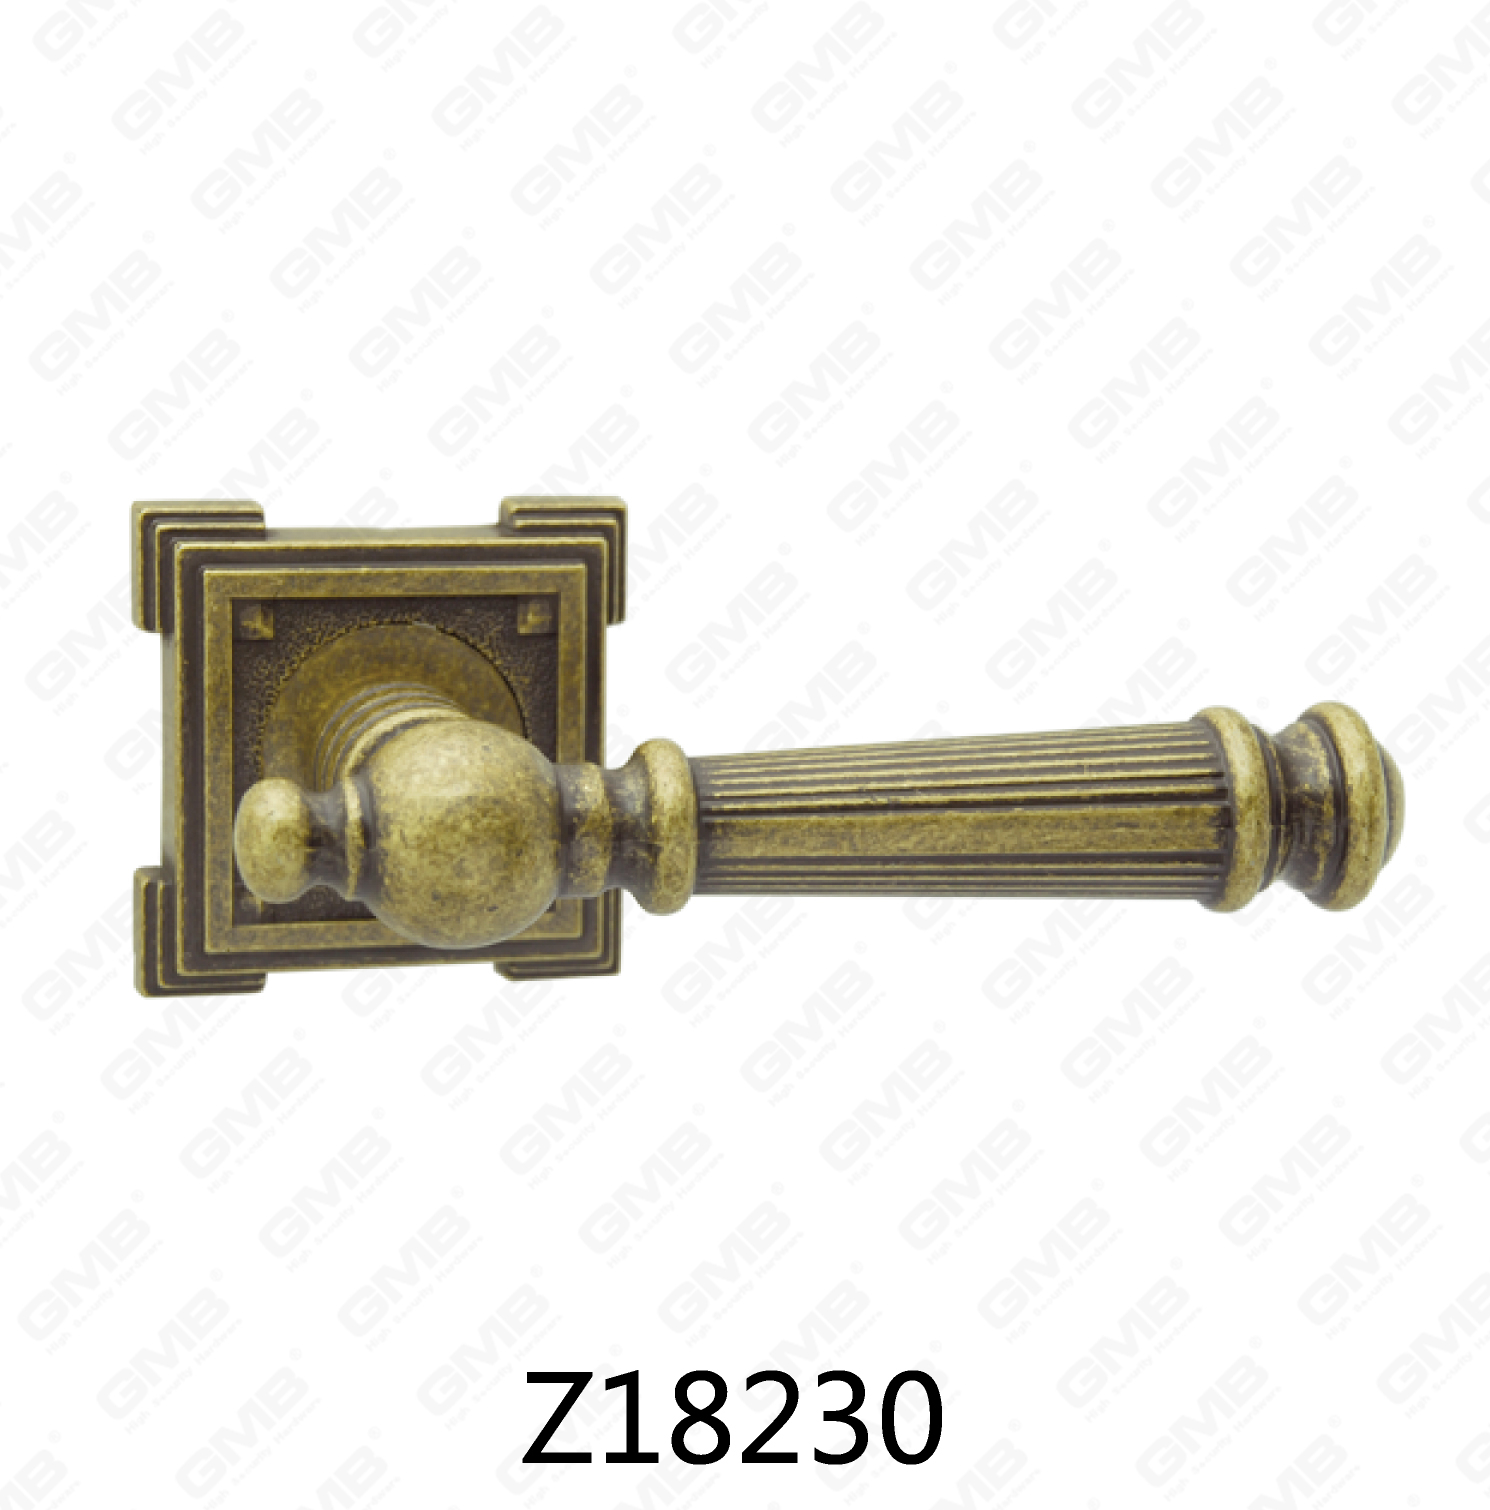 ידית דלת רוזטת אלומיניום מסגסוגת אבץ של Zamak עם רוזטה עגולה (Z18230)